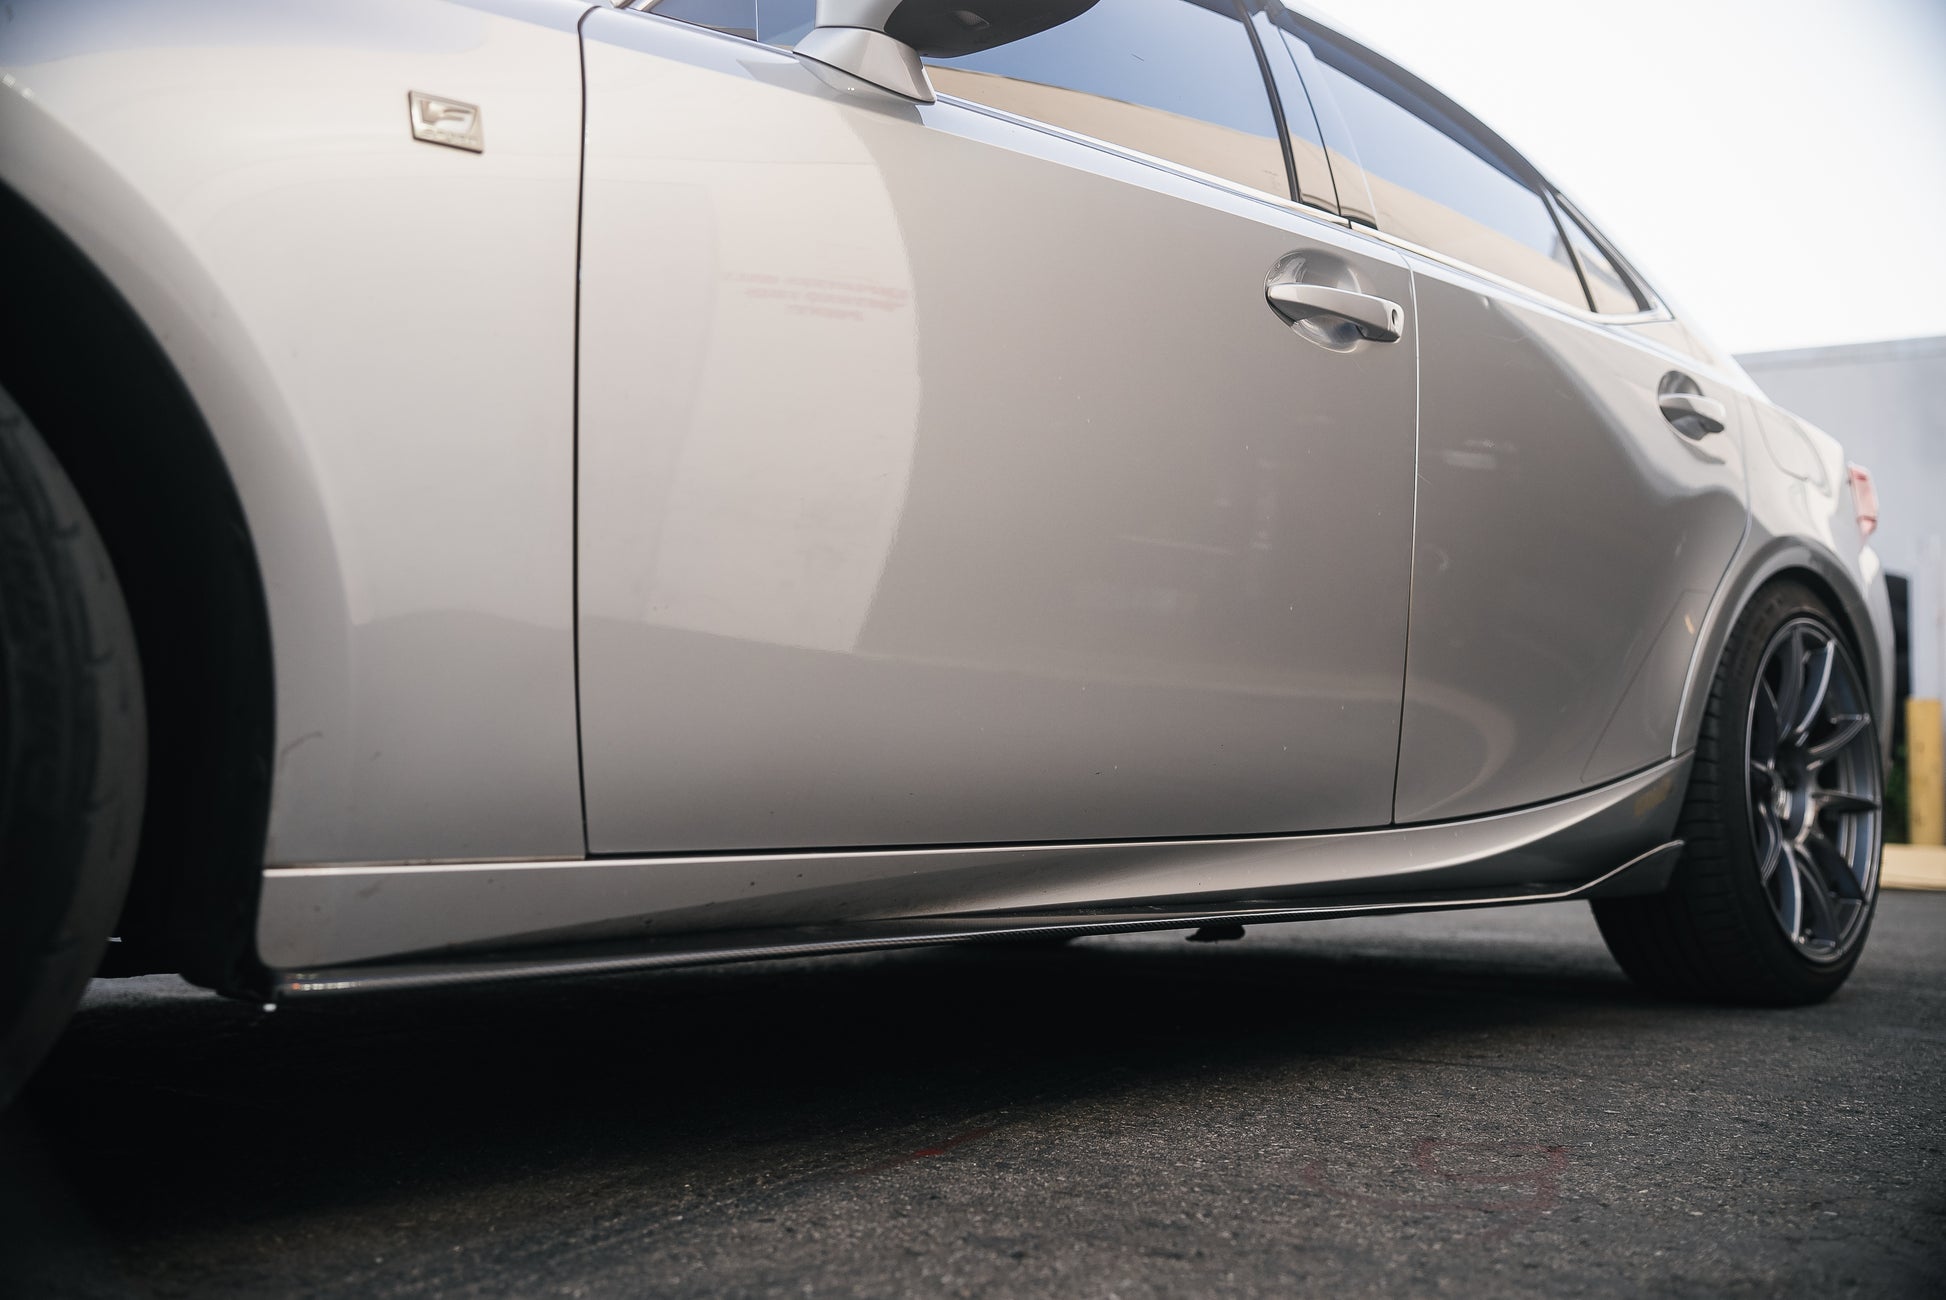 Origin Stryfe | Carbon Fiber Side Skirt - Lexus IS F-Sport 2014-18